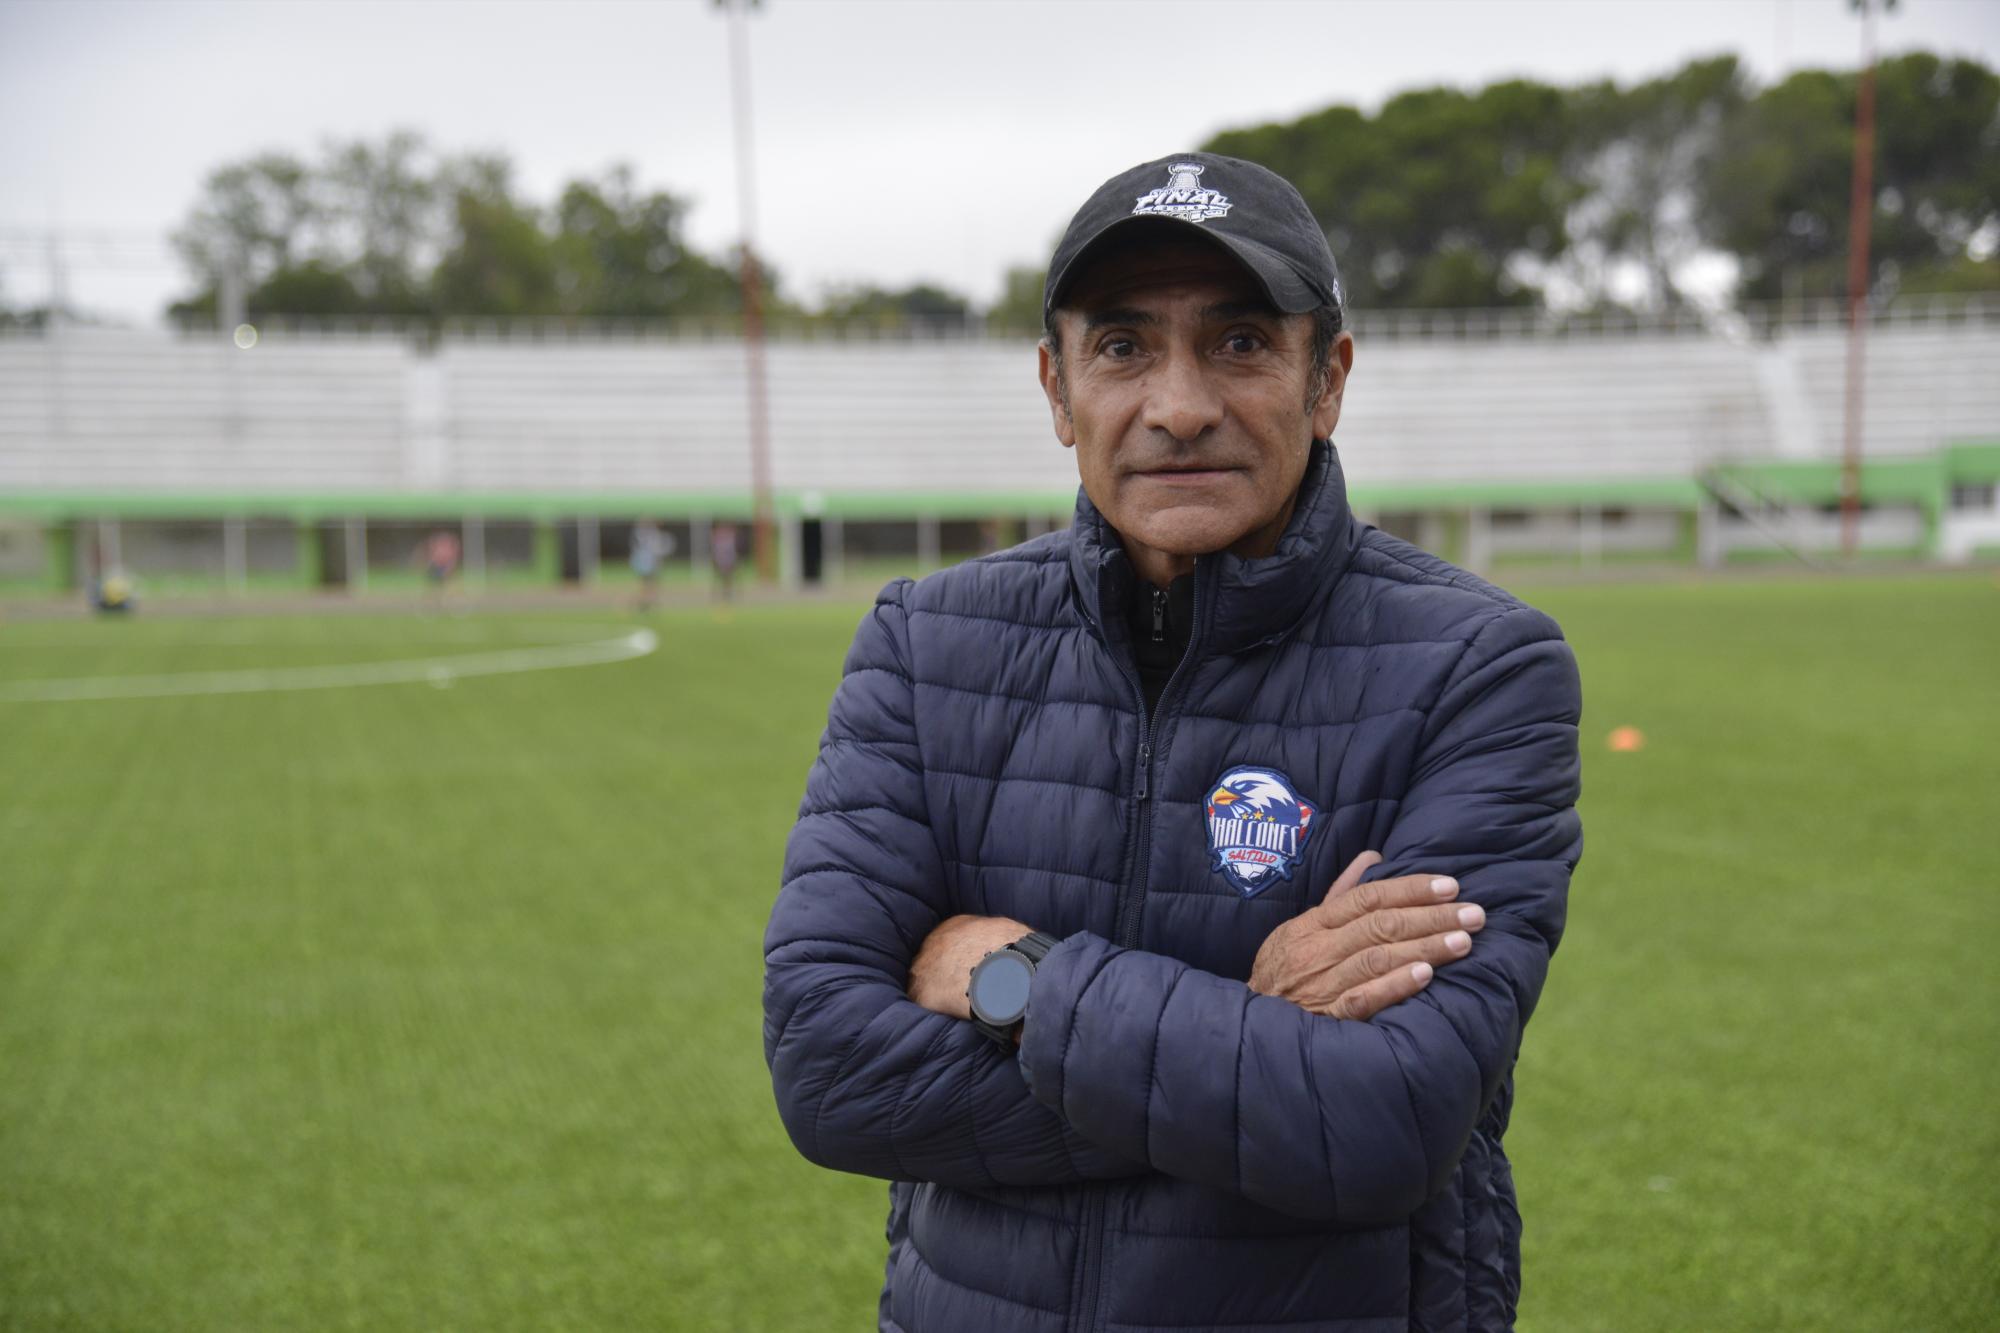 $!El profesor García Moreno ha dedicado toda su vida al futbol, en equipos como Gallos Blancos, Pachuca, Cruz Azul Hidalgo, entre otros.